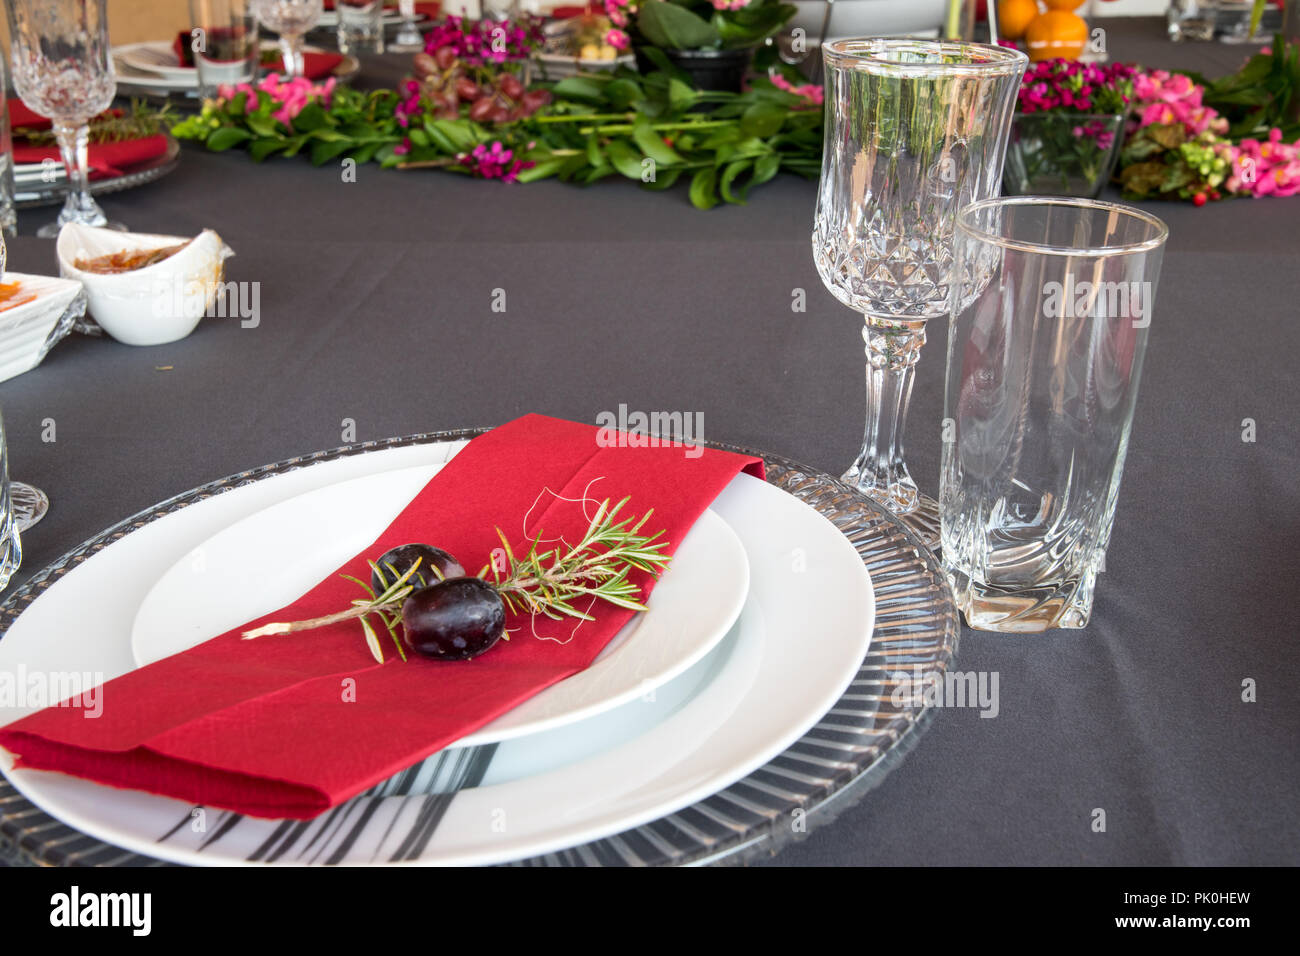 La table du déjeuner ensemble avec des plaques en gris et blanc, de belles assiettes, serviette rouge, petit arbre décoratif,direction des deux cépages avec décor floral et de fruits. Banque D'Images